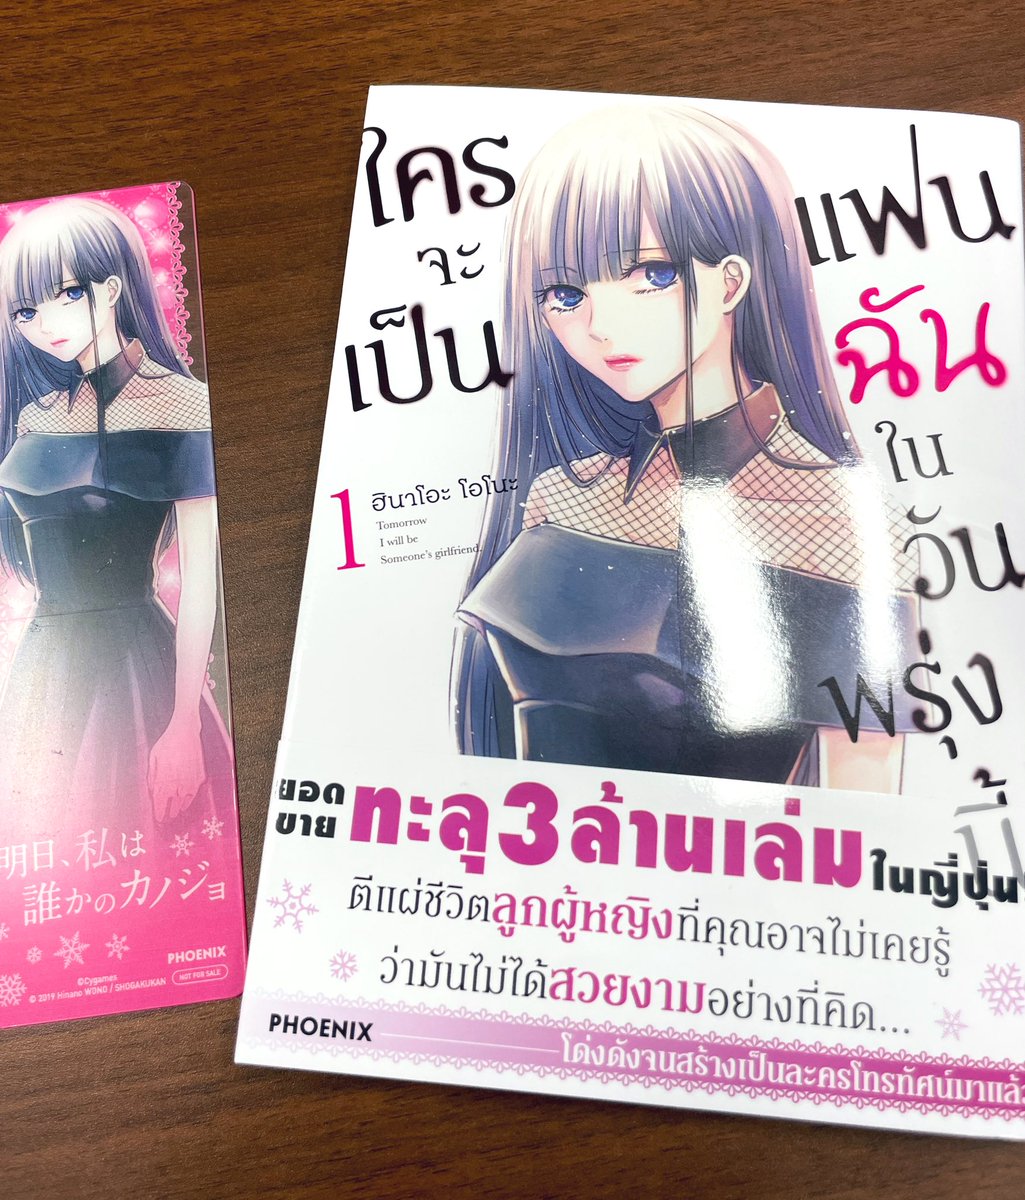 「明日、私は誰かのカノジョ」タイ語翻訳版の献本をいただきました📕 特典でしおりがついてる…! タイの方々にも楽しんで頂けたら幸いです!